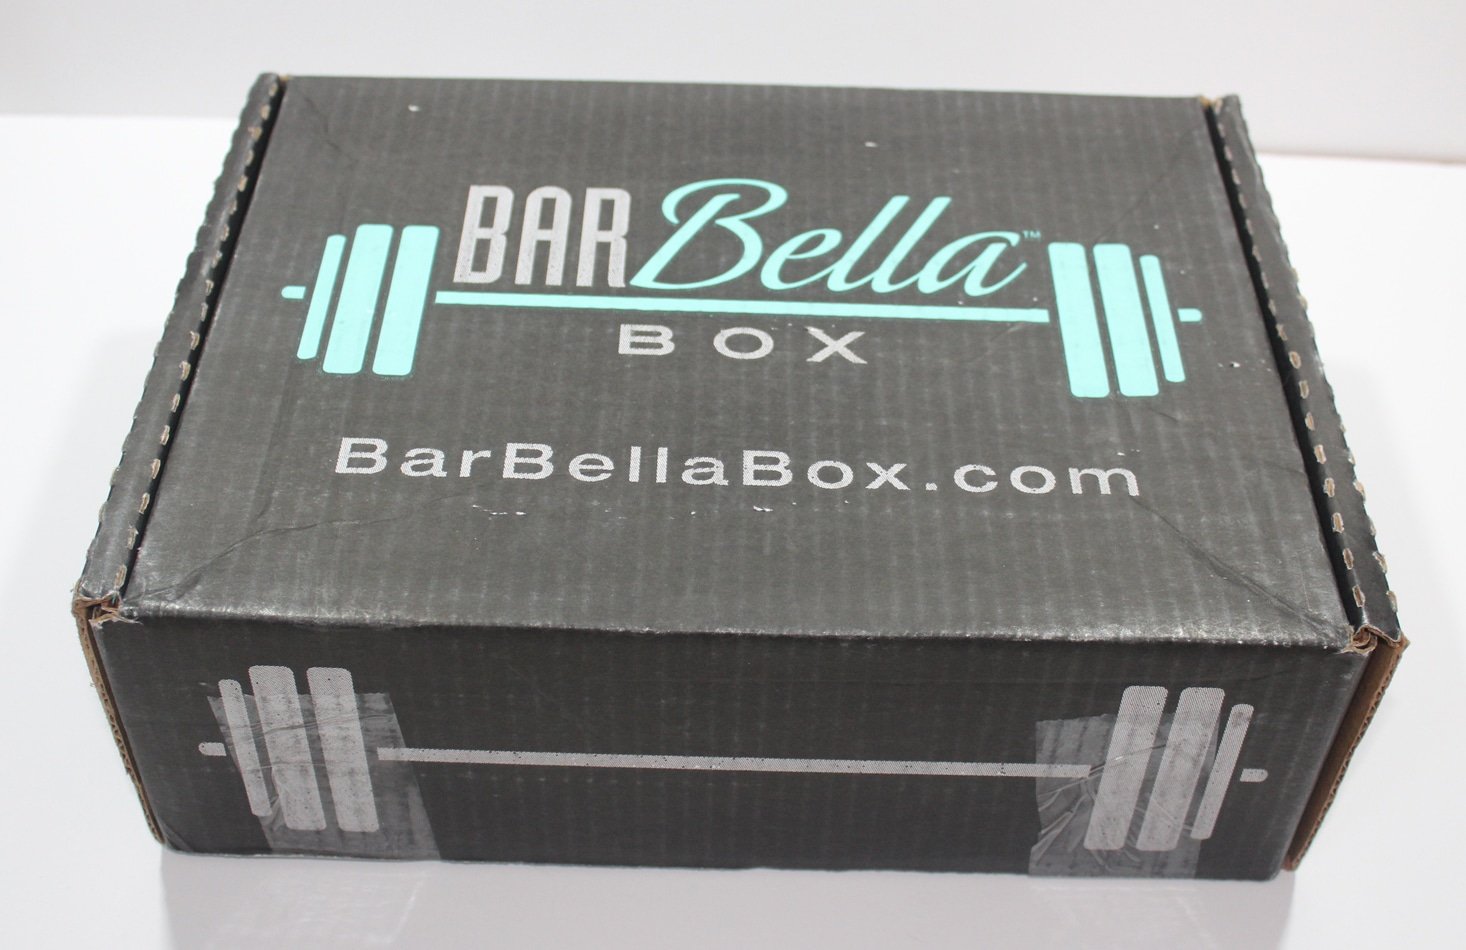 Barbella Box Subscription Review + Coupon – May 2017